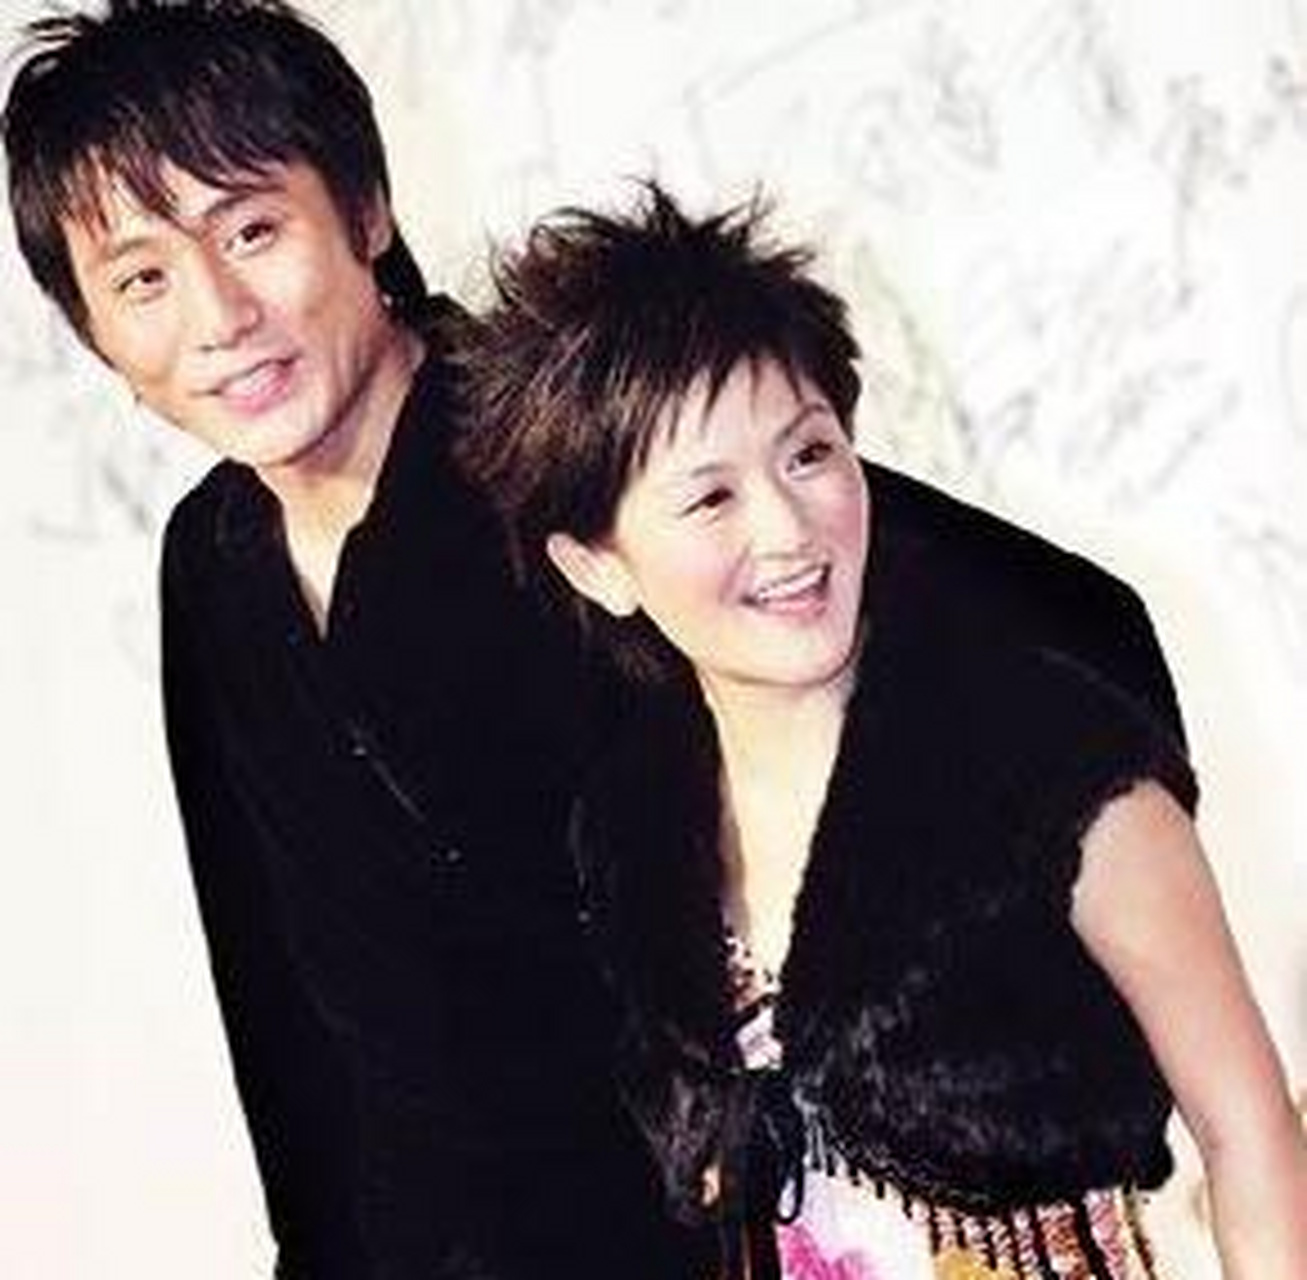 他们第一次相识于电视剧《幸福街》,那时的刘烨是男主角,而谢娜只是一